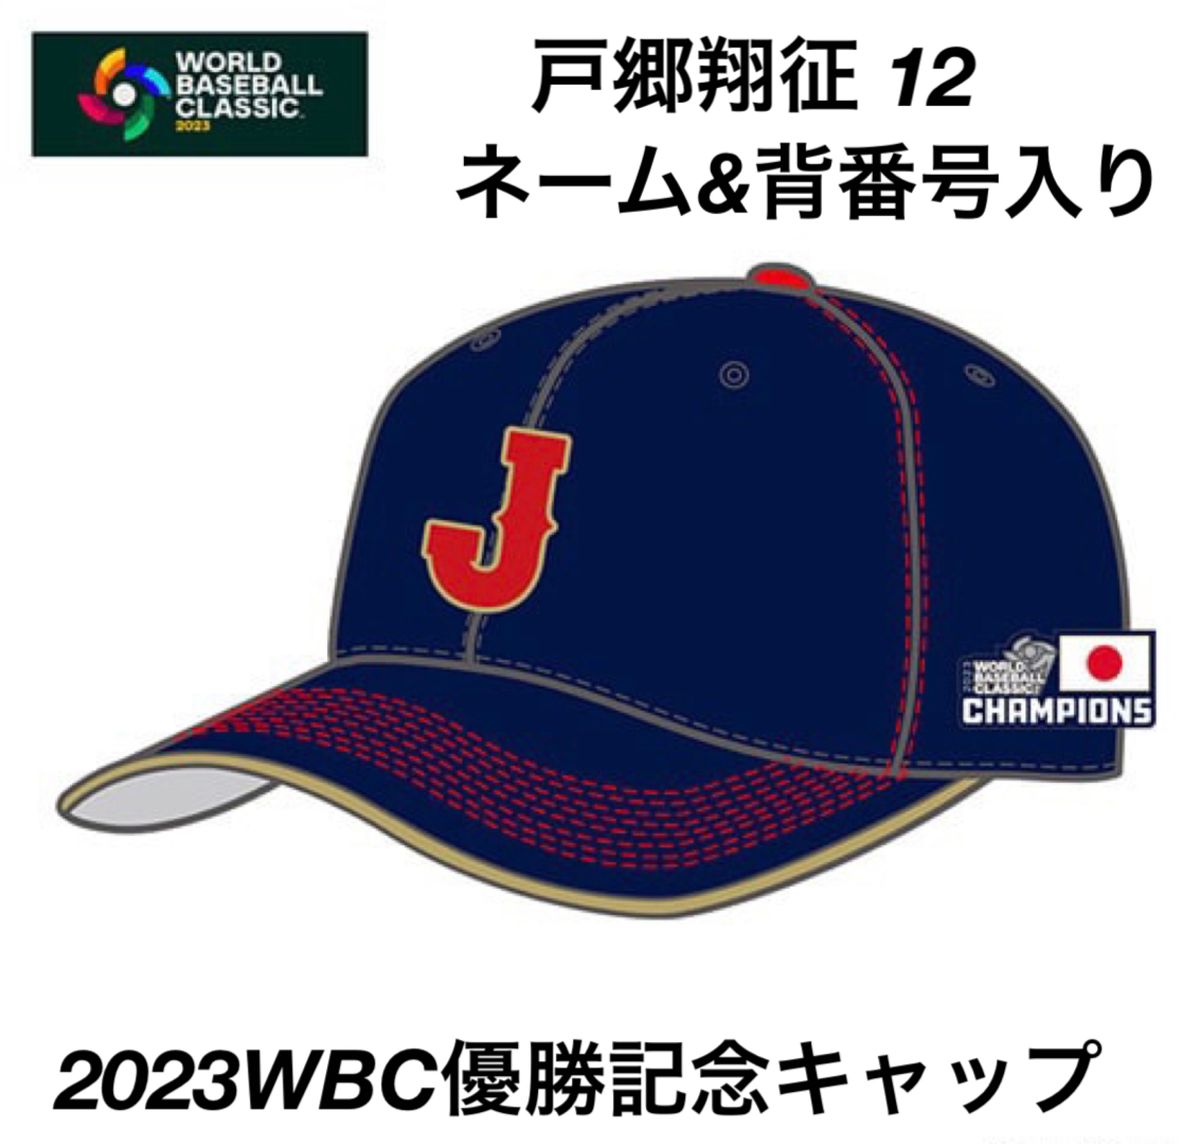 公式 2023 WBC レプリカ キャップ ジュニア 特典クリアファイル付 帽子